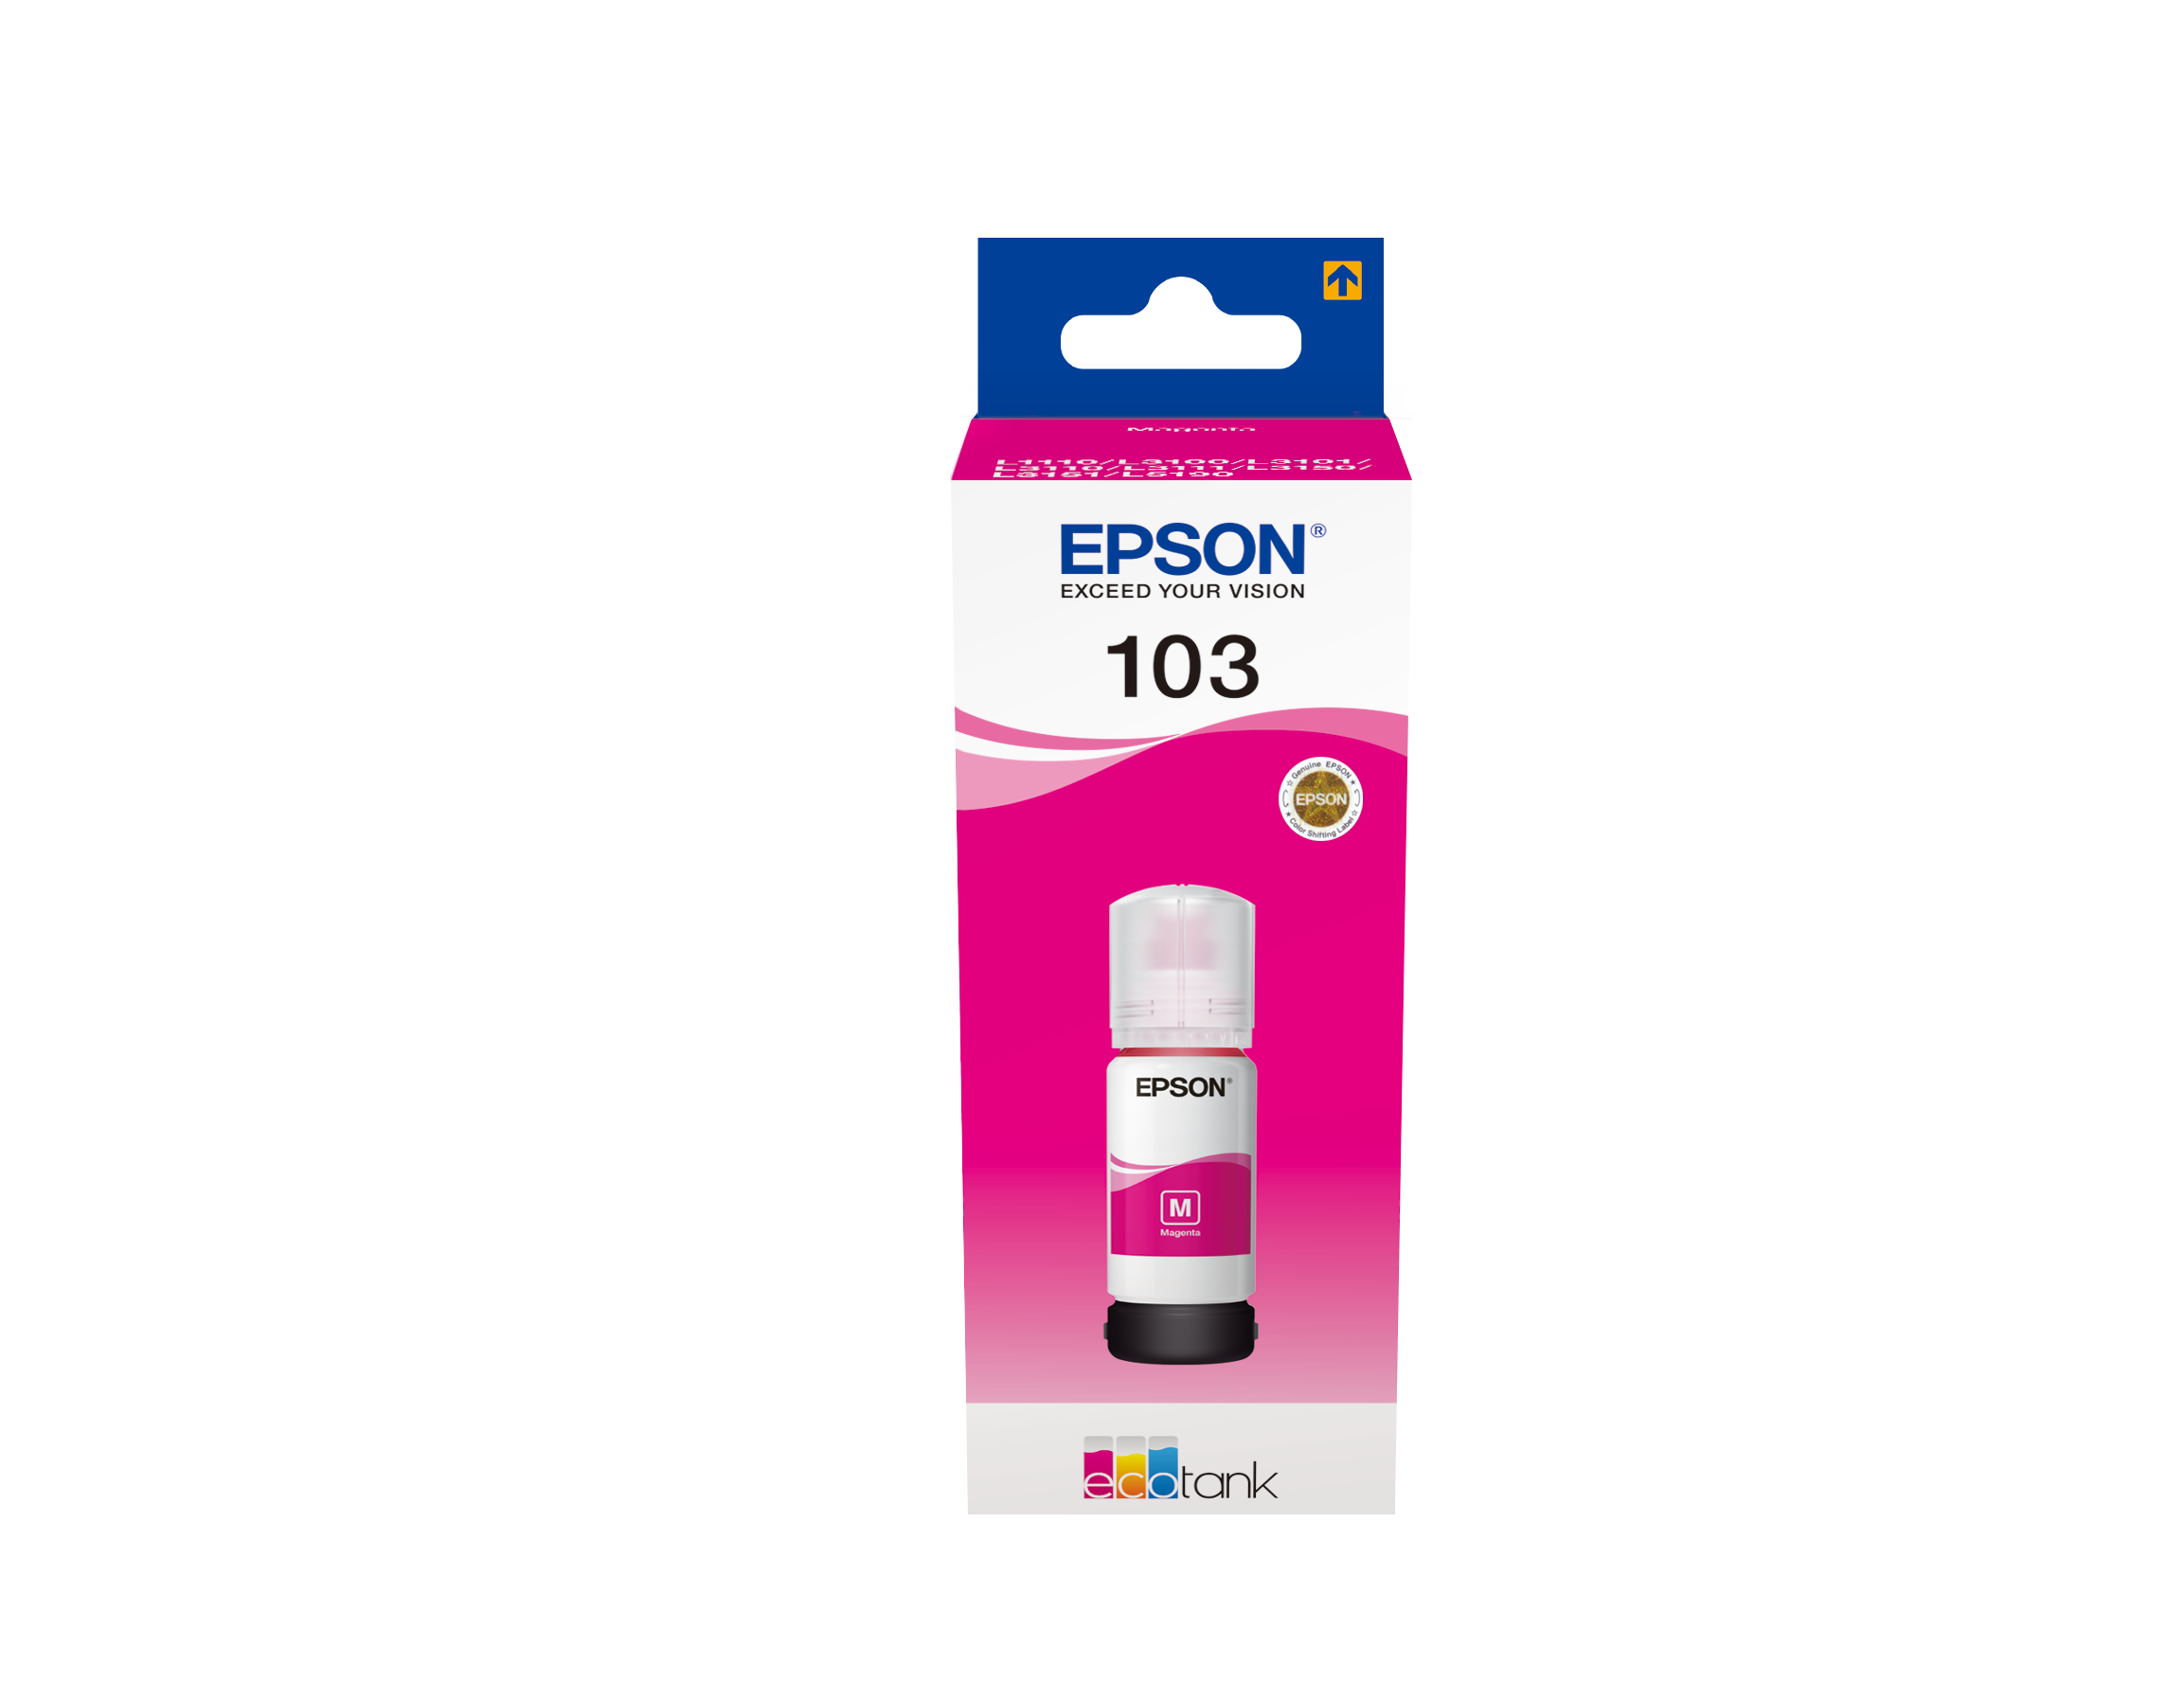 Epson EcoTank L1110 stampante a getto d'inchiostro A (C11CG89401)